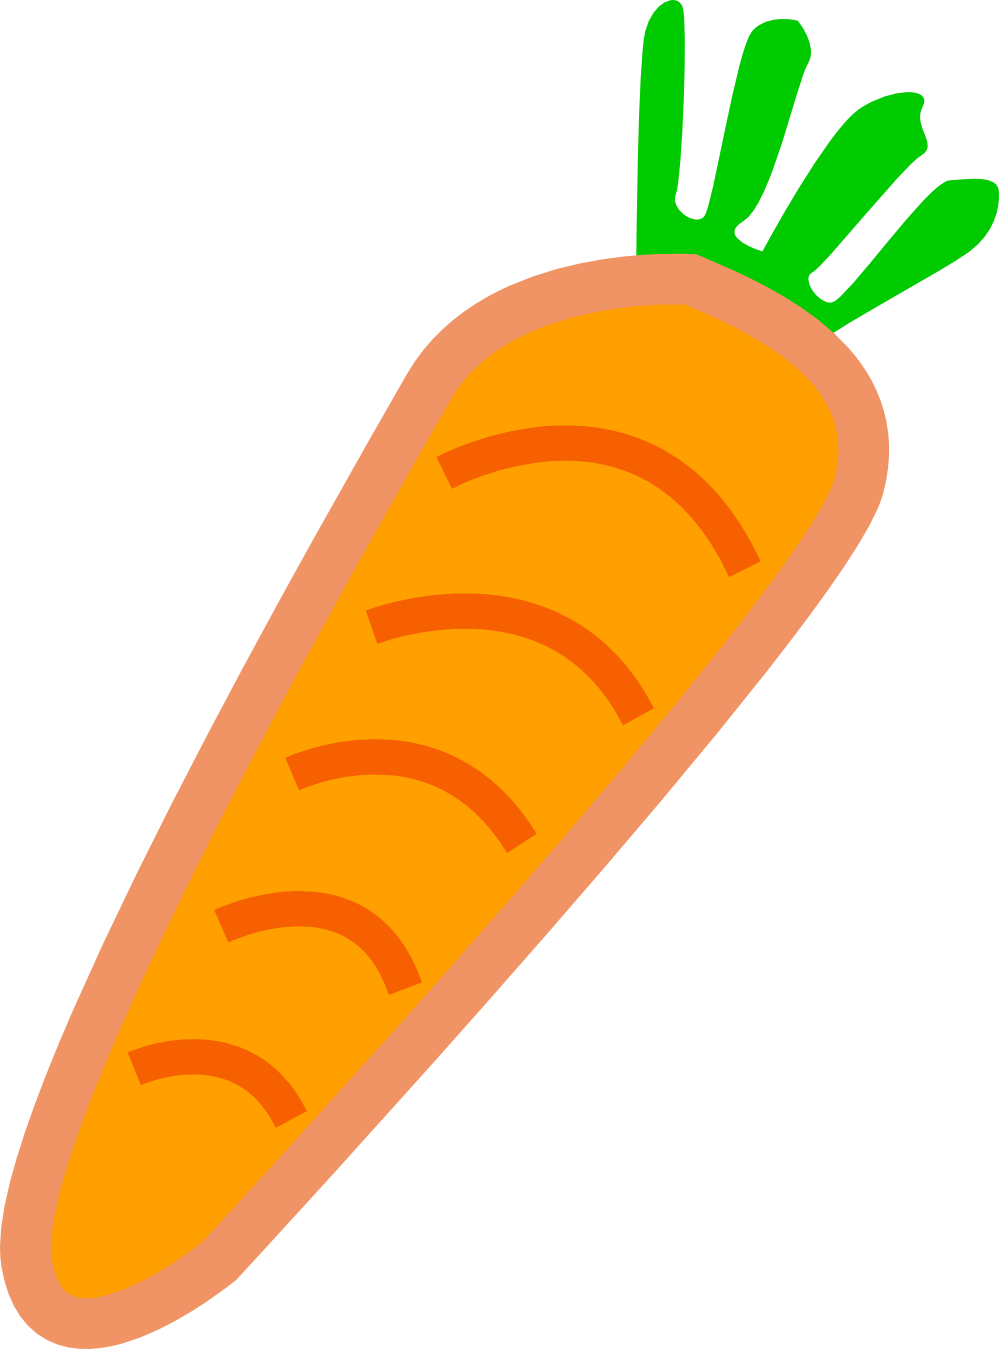 Carrot clipart #CarrotClipart, Vegetable clip art ...